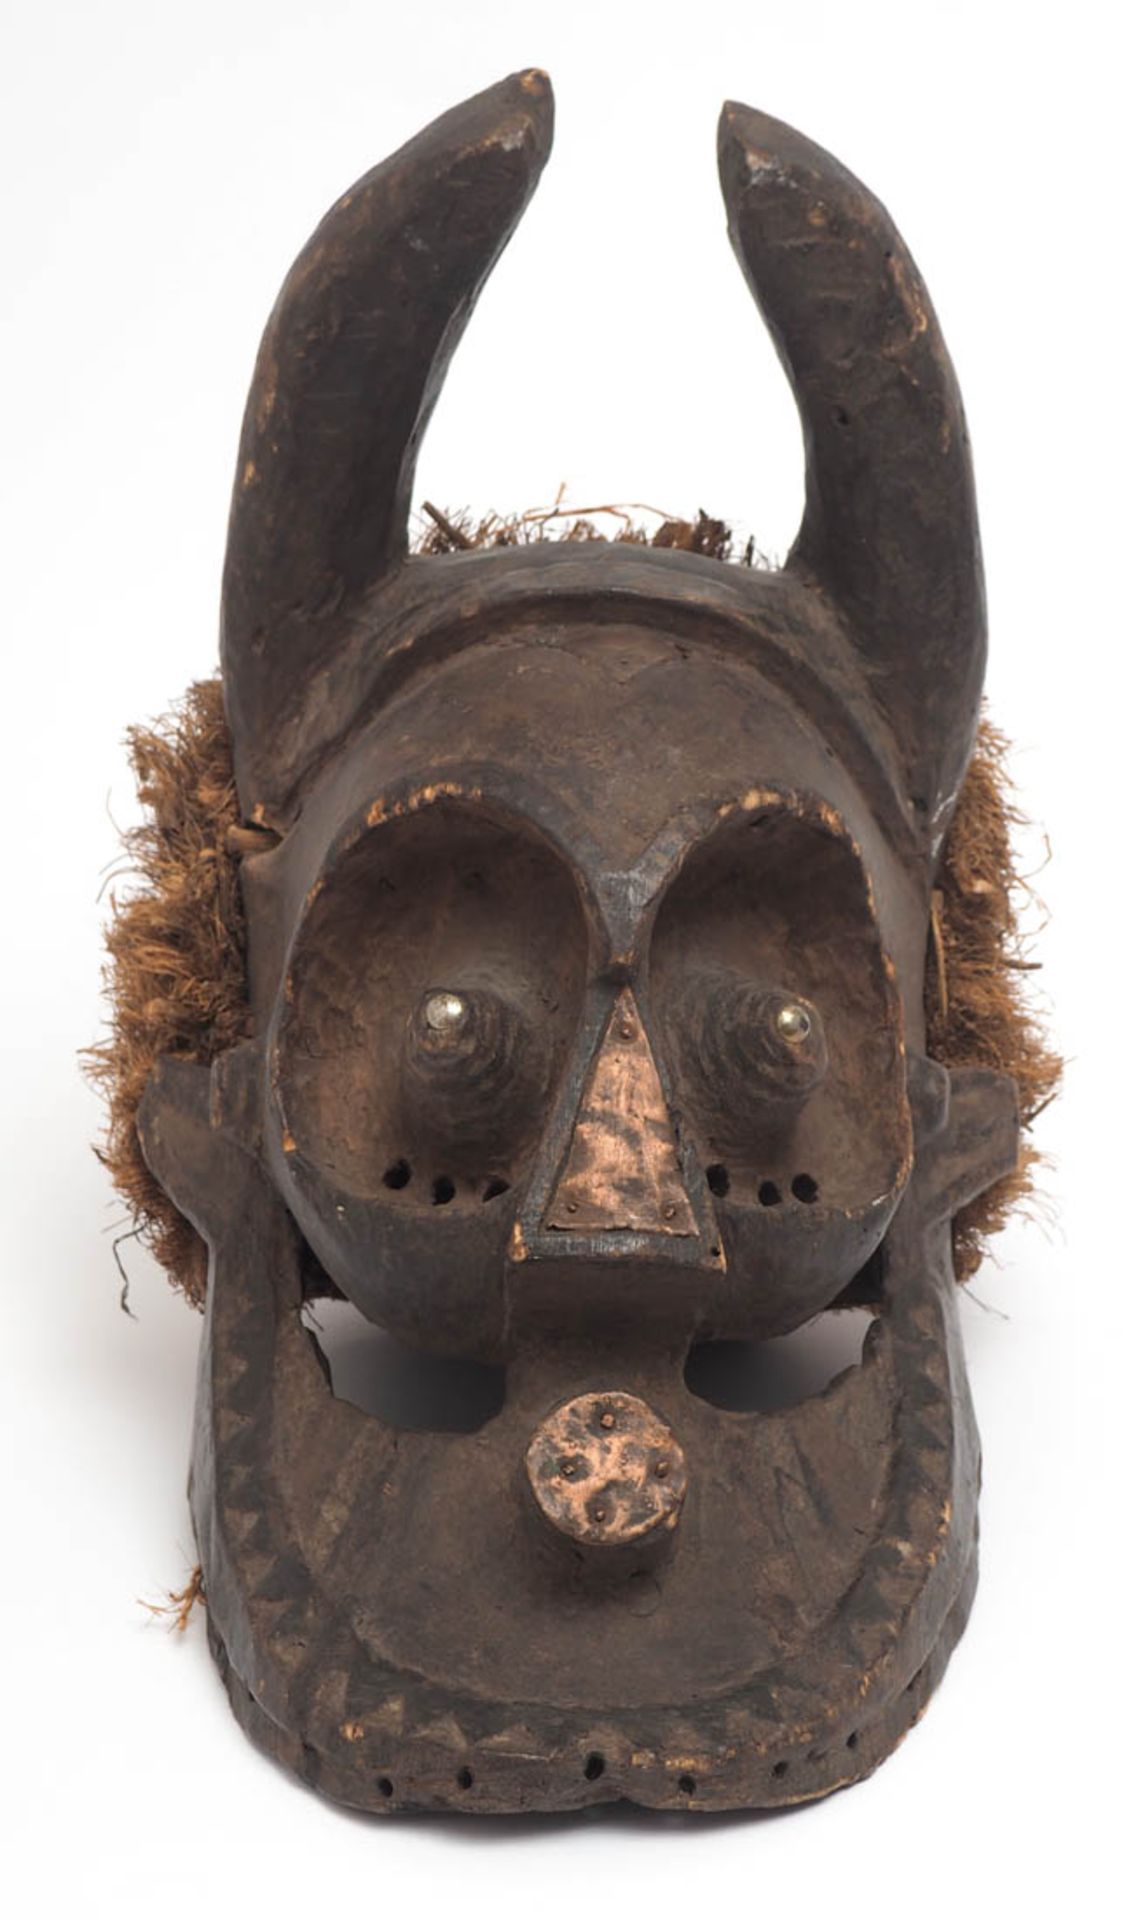 Chamäleon-Maske, "Pwoo Itok", Kuba, Dem. Rep. Kongo Gehörntes Gesicht mit hervorstechenden Augen. - Bild 2 aus 5